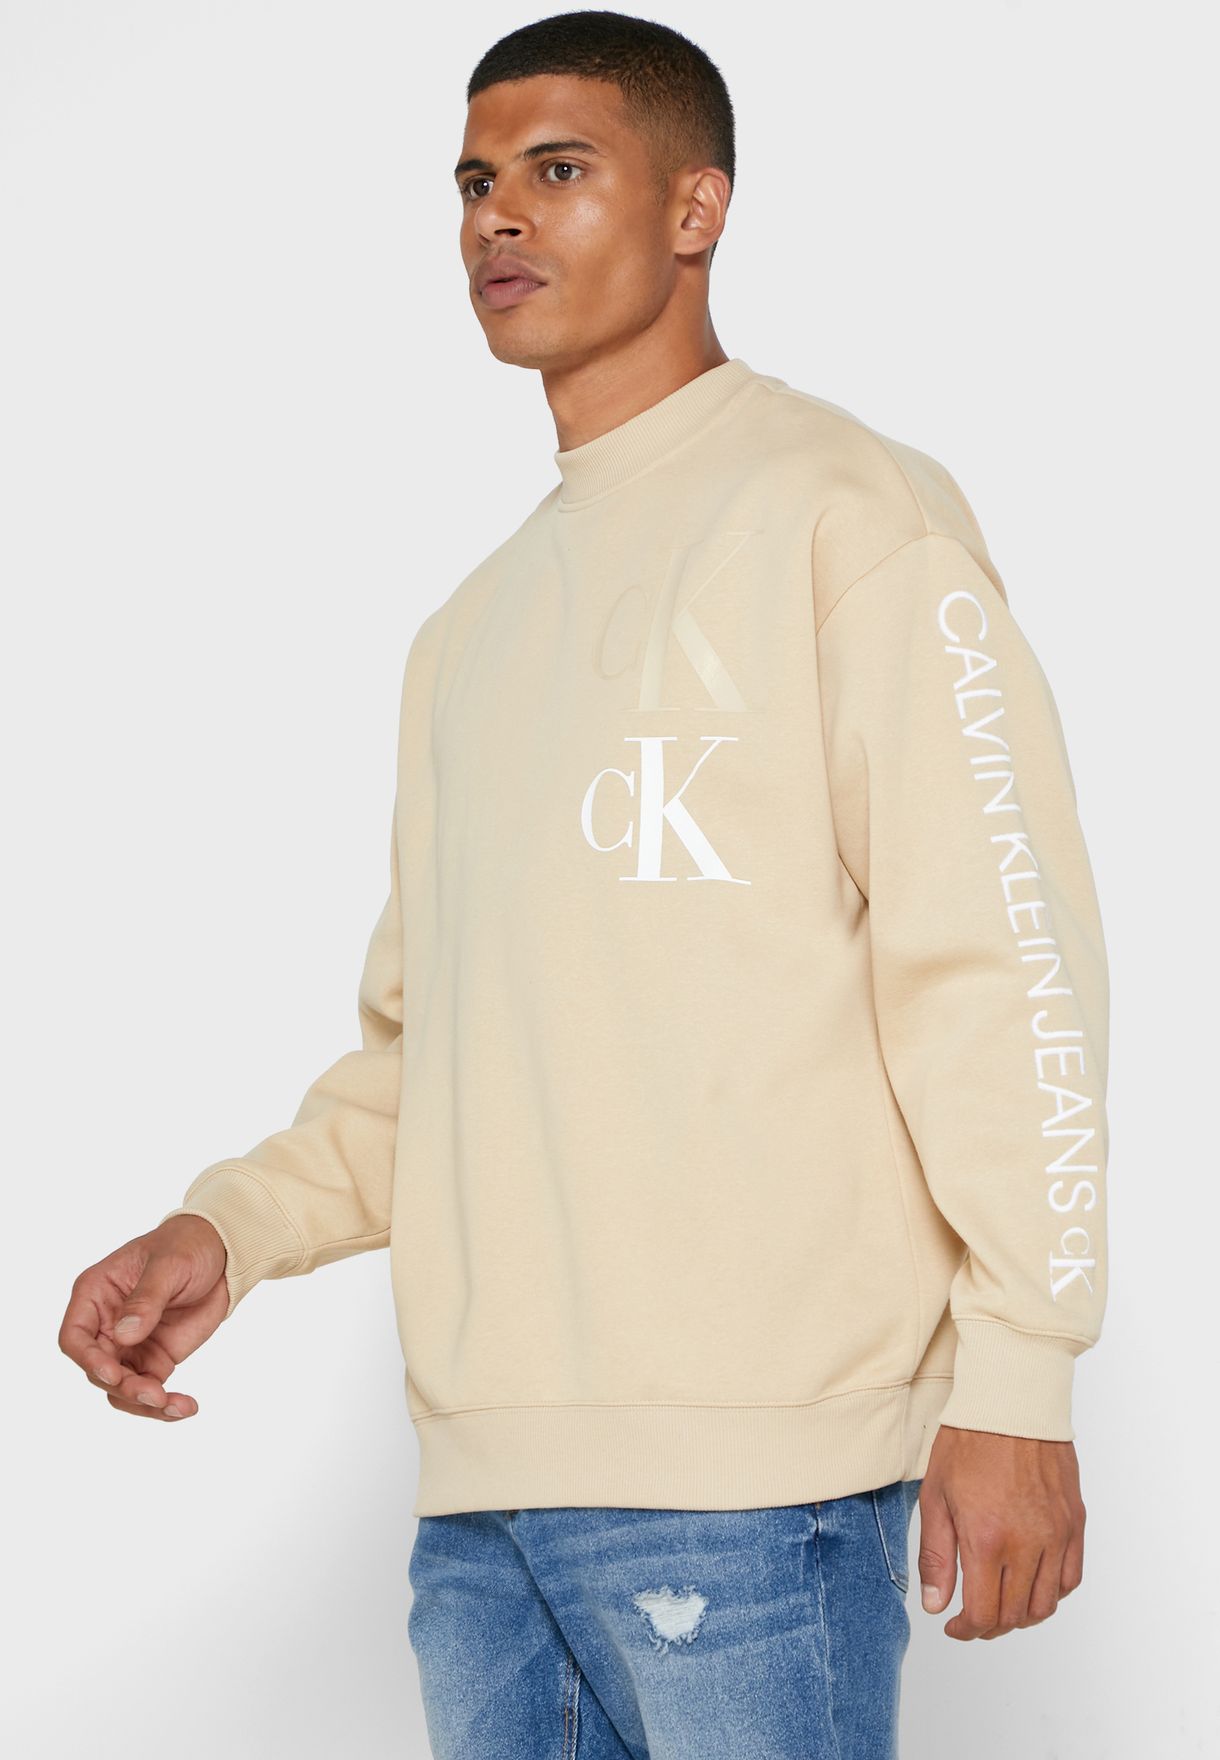 Calvin Klein Sweater Beige Flash Sales, SAVE 39% 